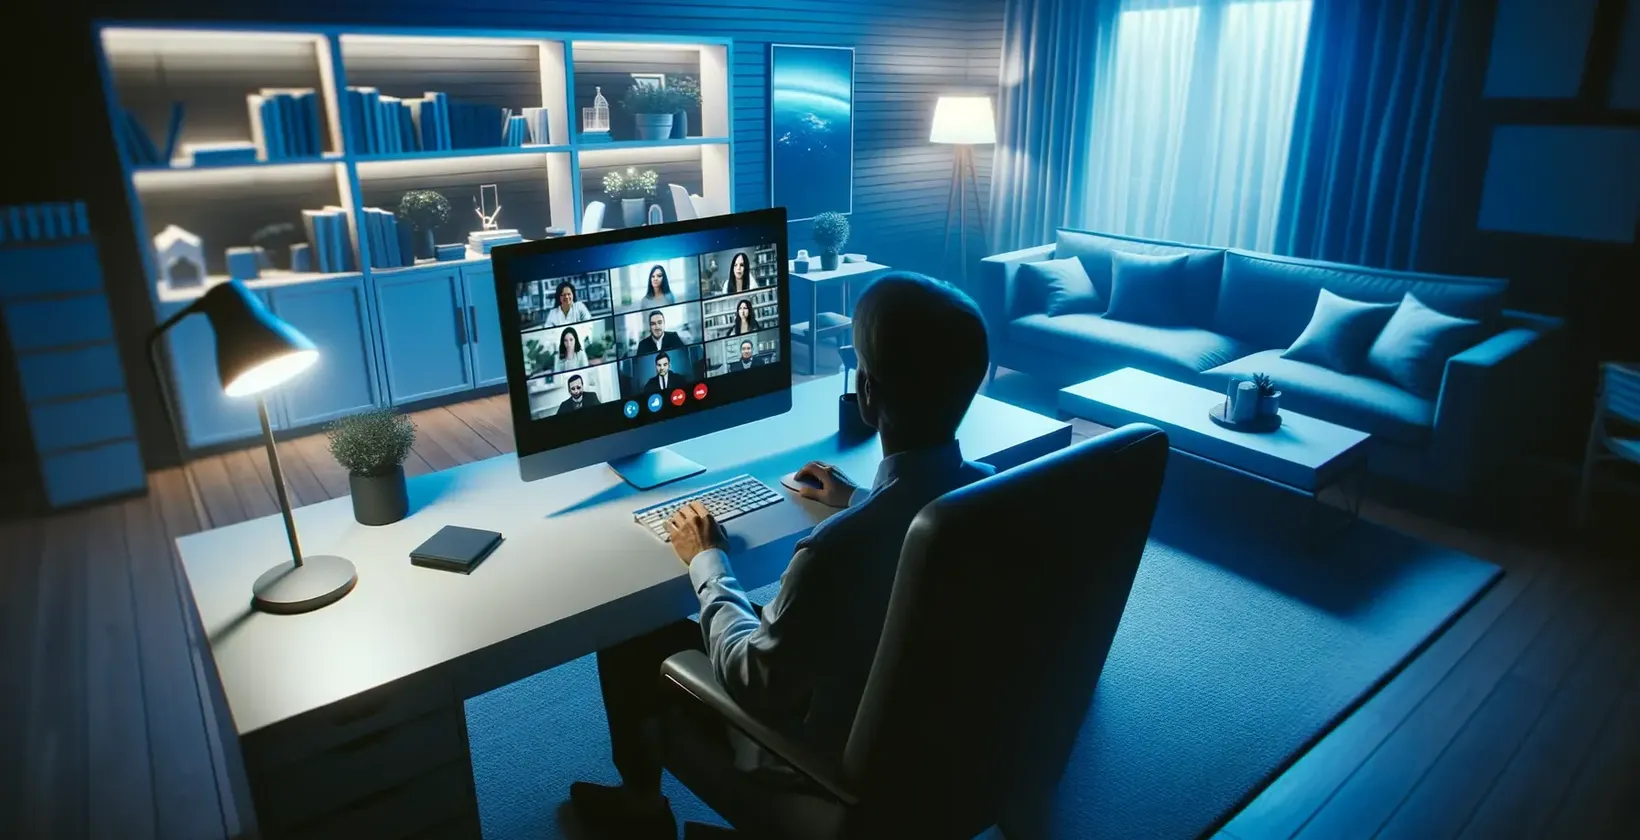 डेस्क पर औपचारिक सेटिंग में आदमी, दृश्य प्रतिलेखन के साथ Google Hangouts में लगा हुआ है।